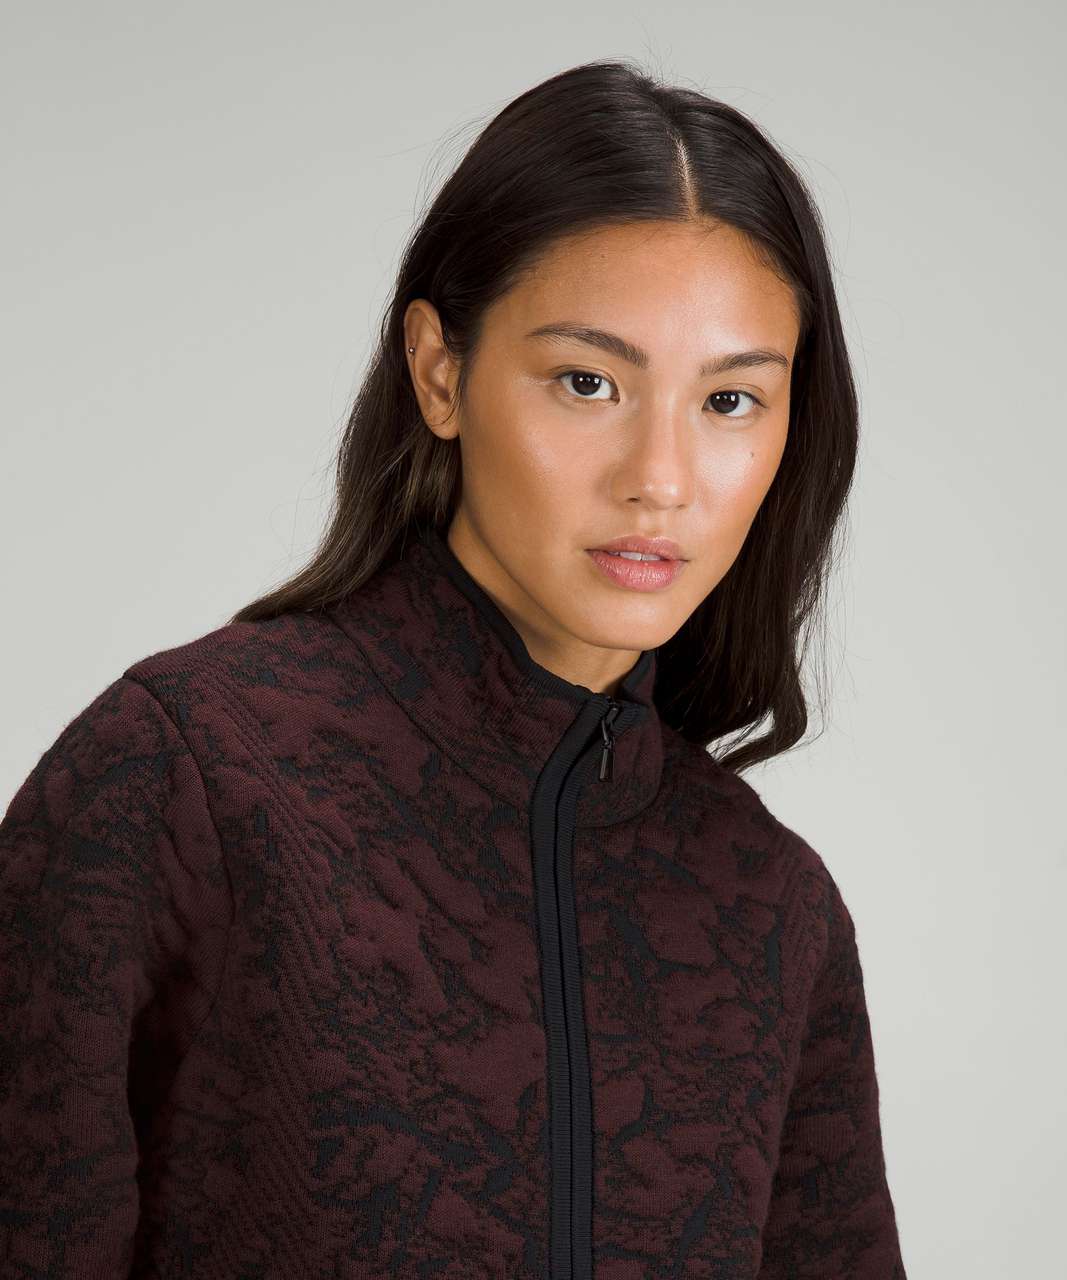 Lululemon Jacquard Multi-Texture Sweater Jacket - Red Merlot / Black